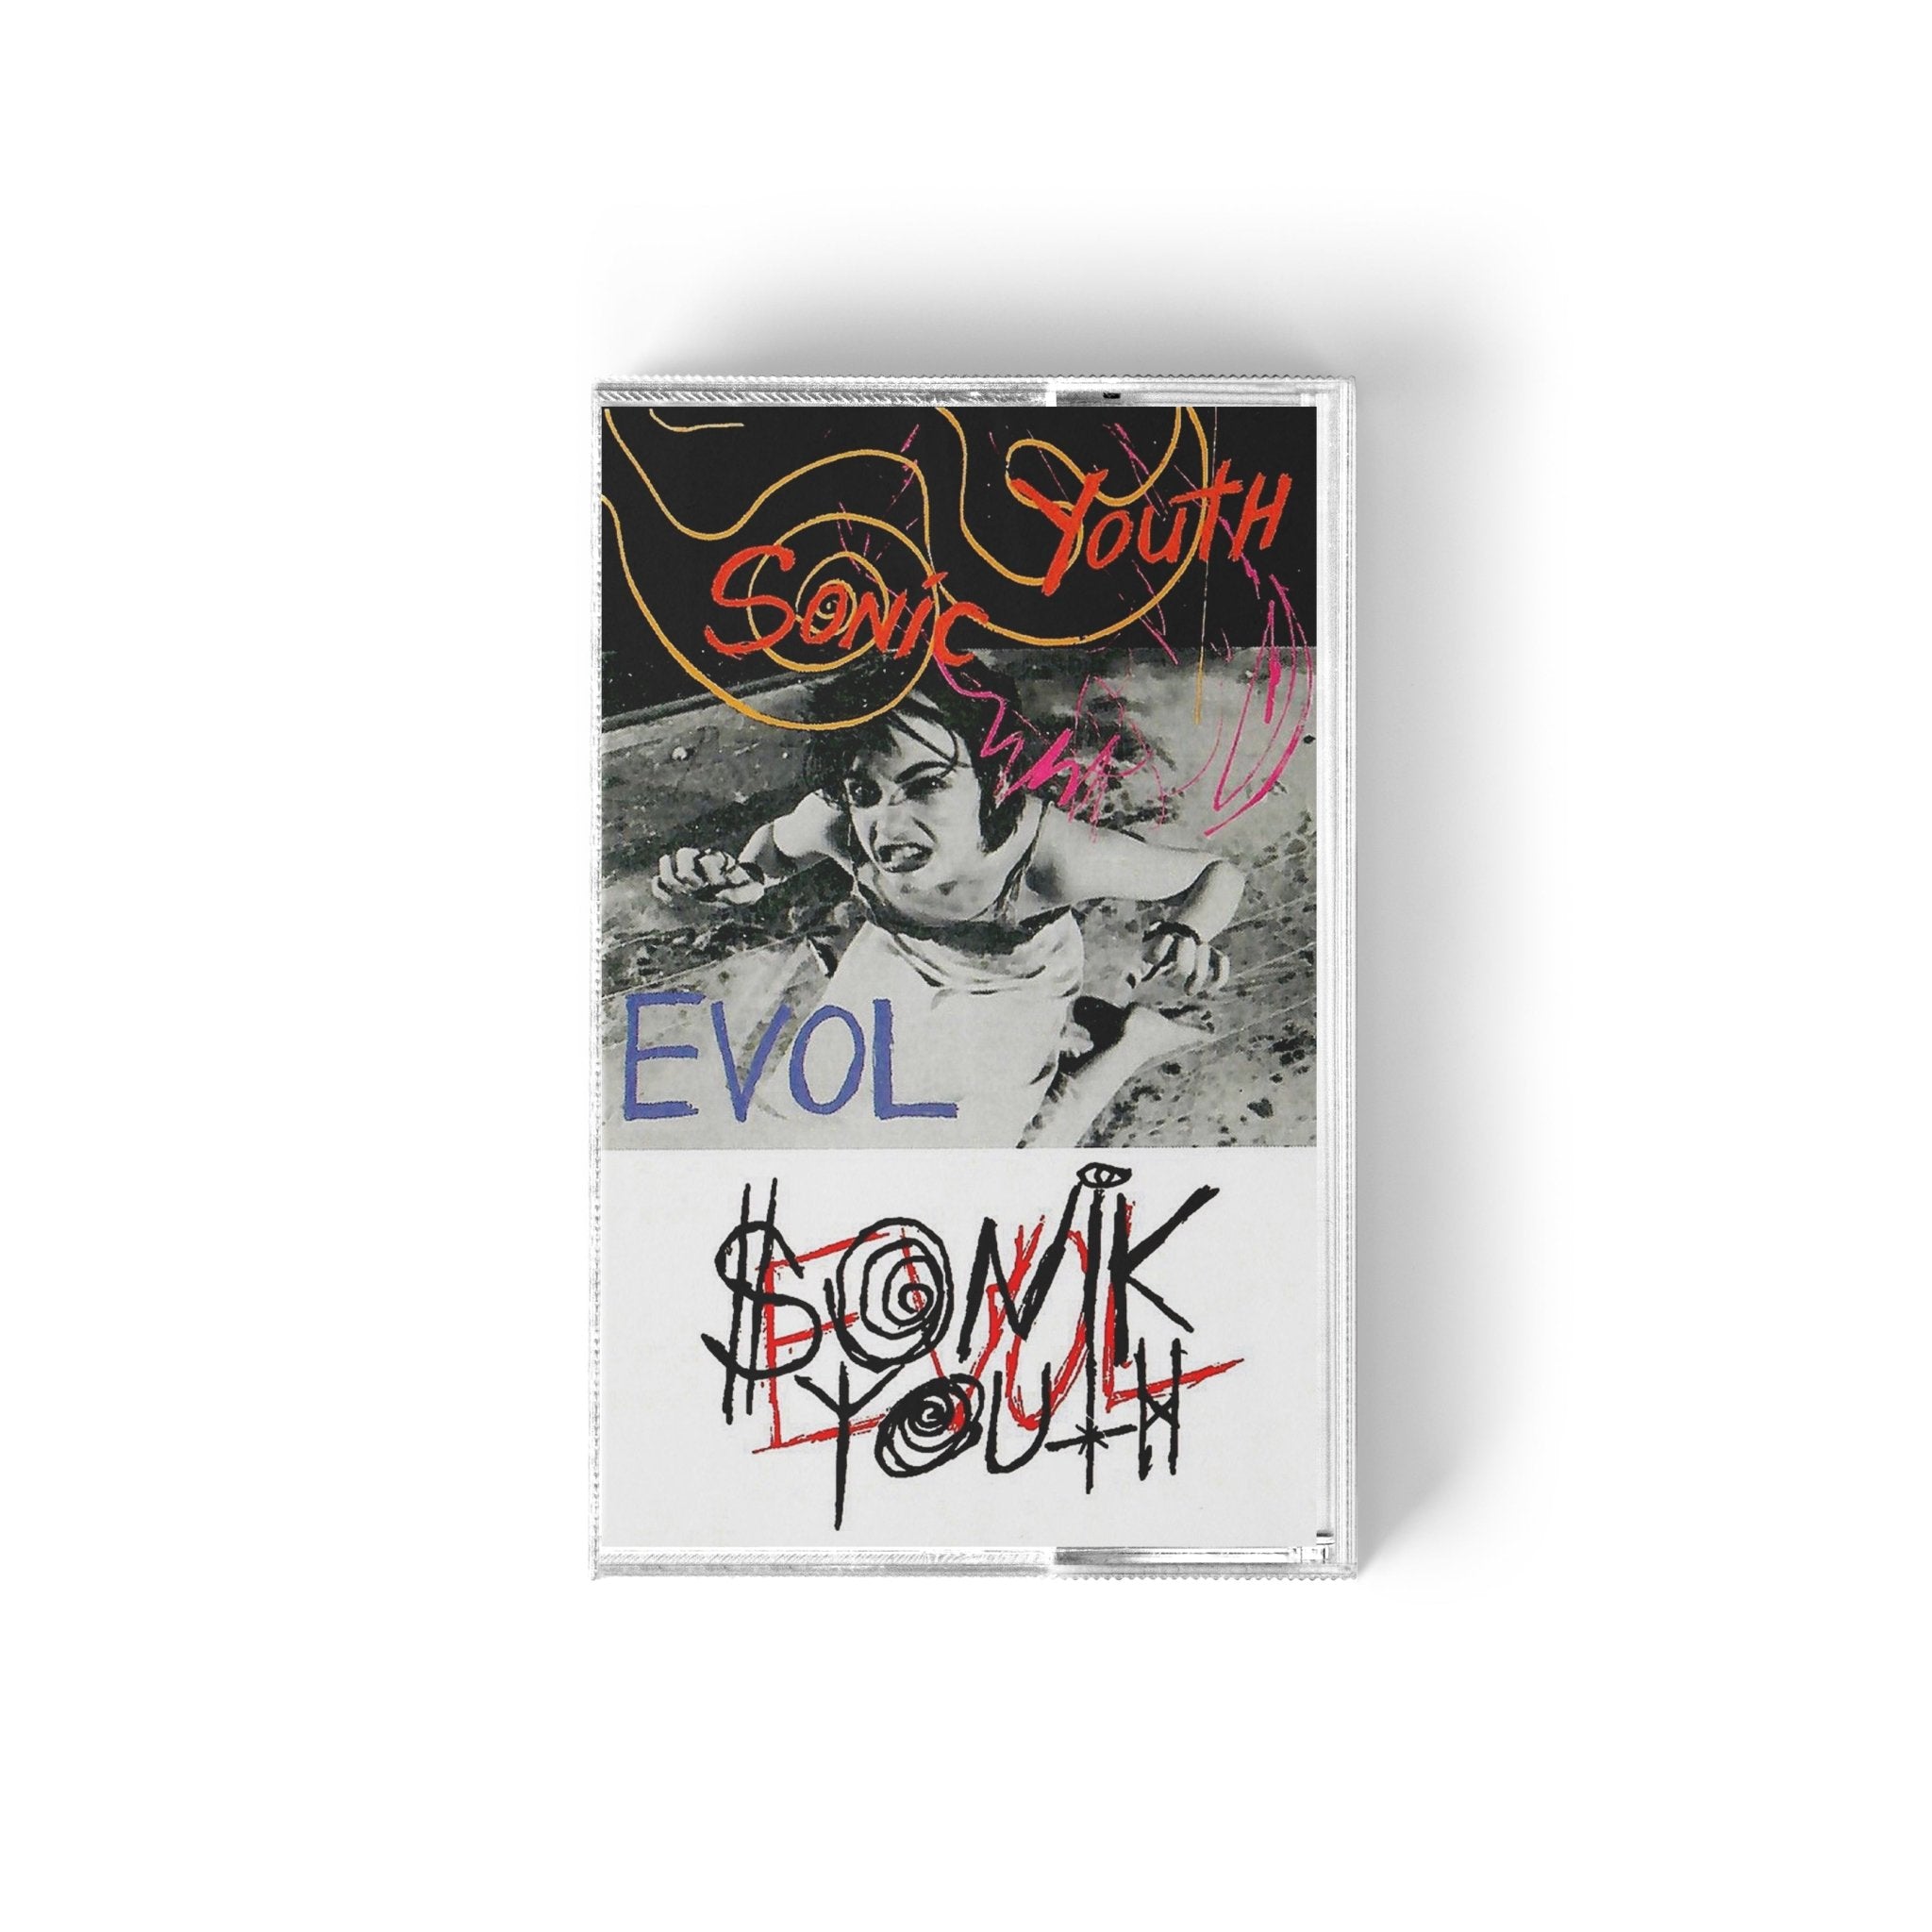 Sonic Youth - Evol Music Cassette Tapes Vinyl